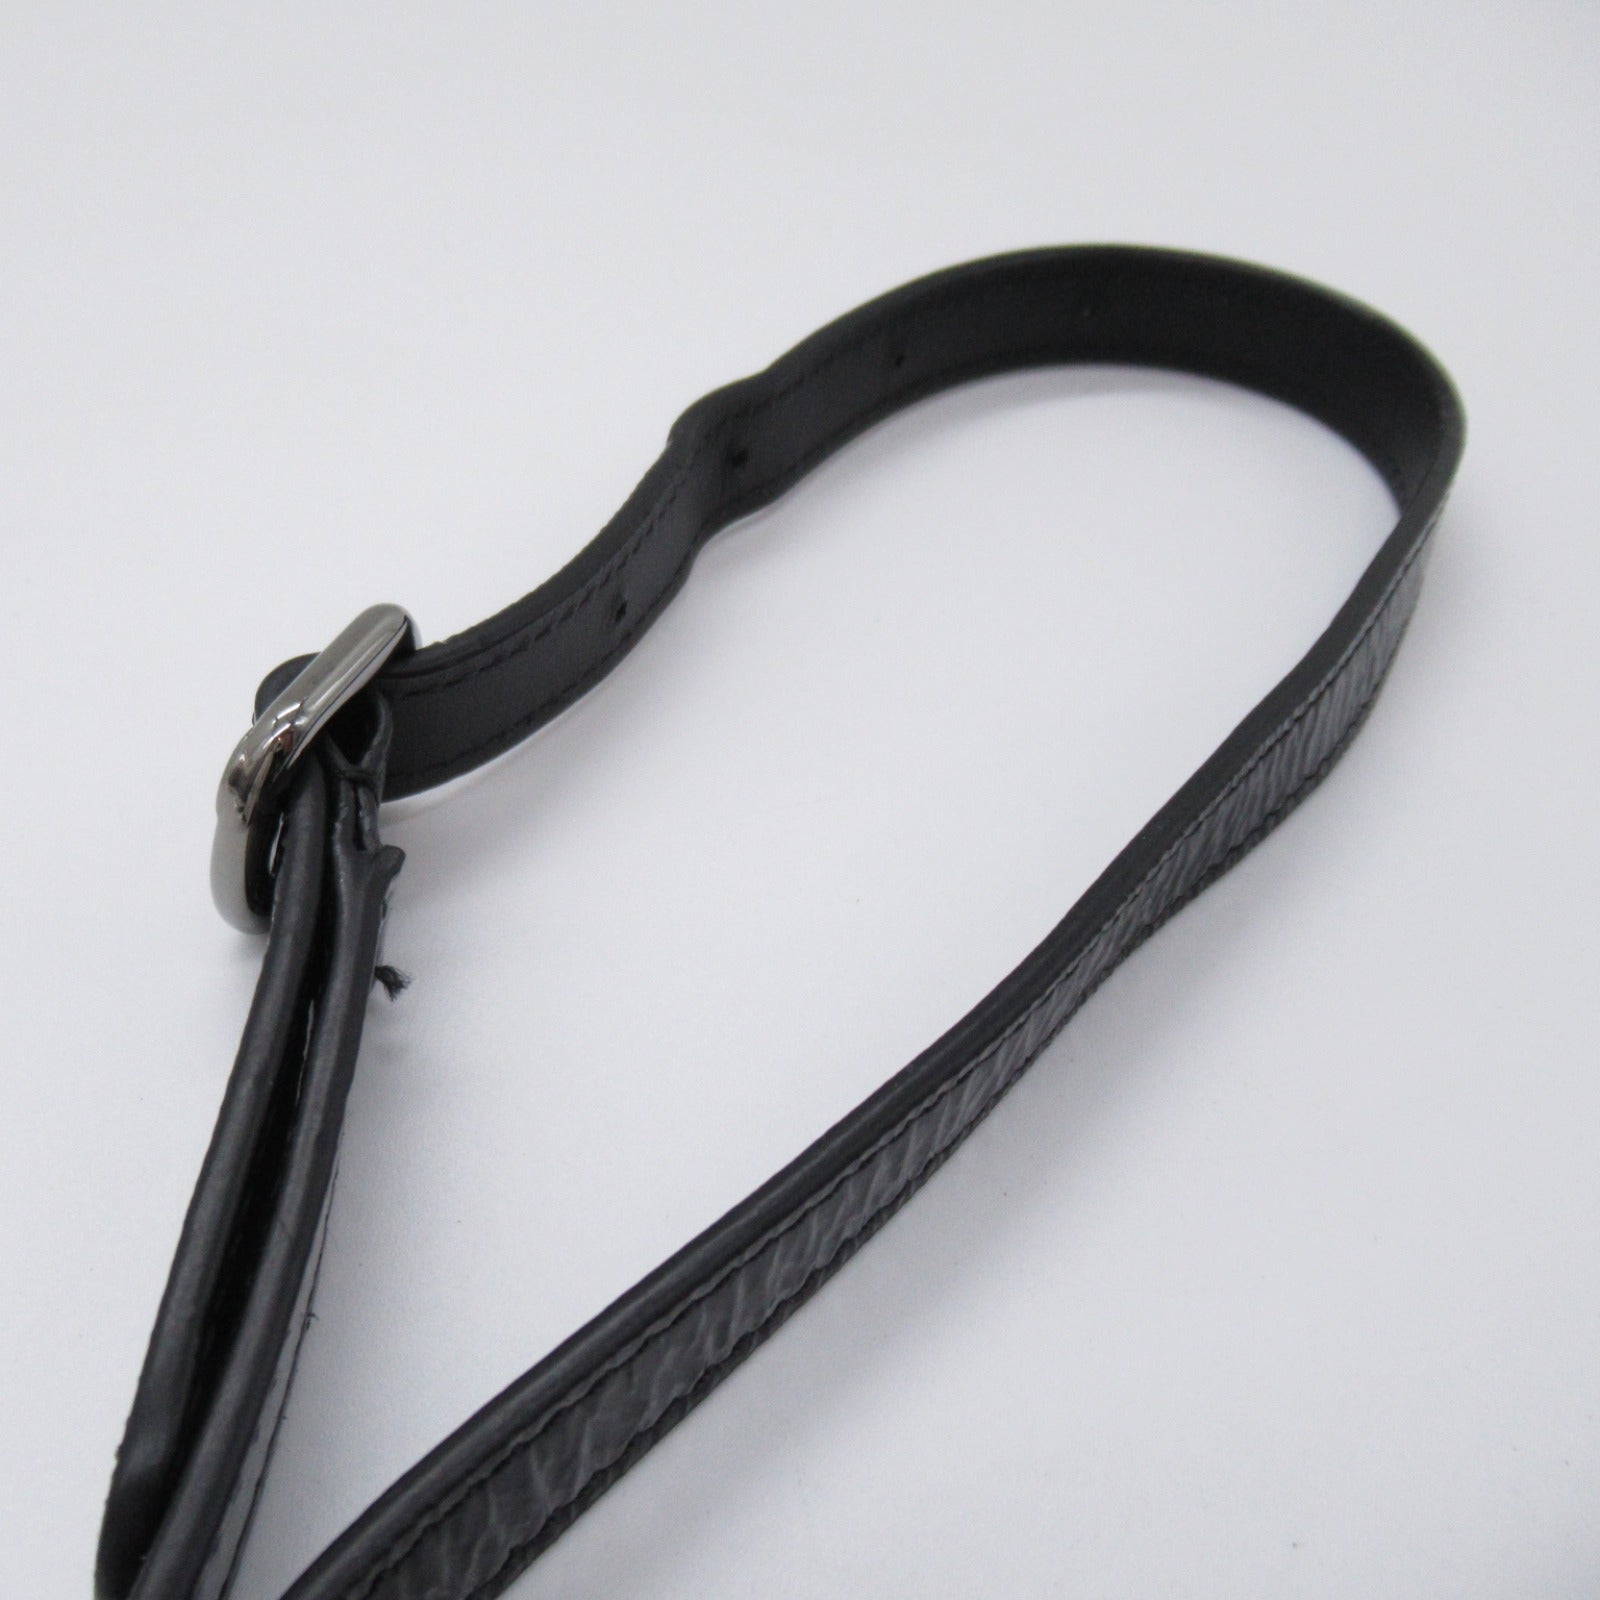 CHANEL CHANEL Round Azure Shoulder Bag Shoulder Bag Patent Leather  Black  A91946